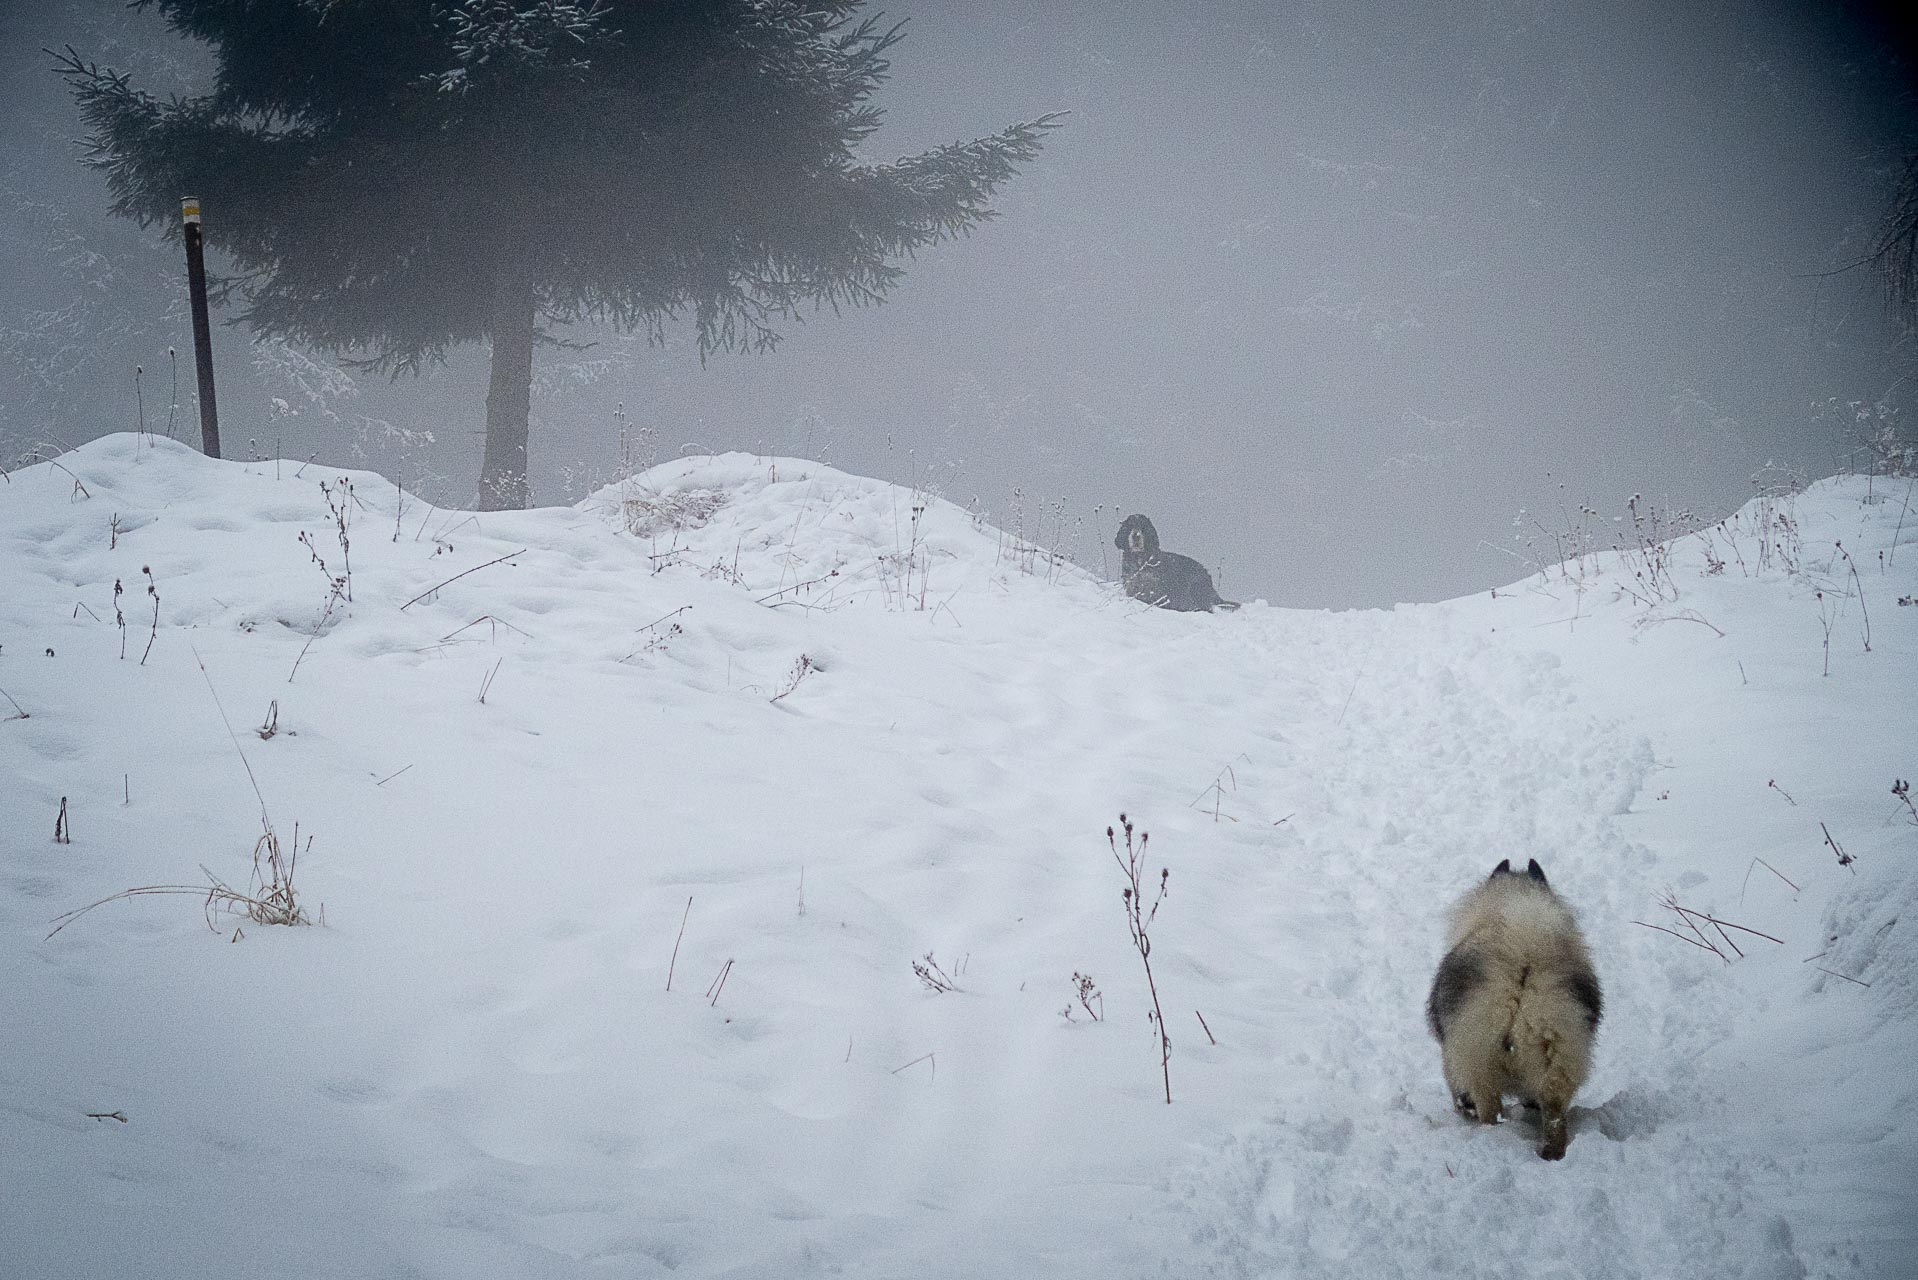 Poludnica zo Závažnej Poruby v zime (Nízke Tatry)